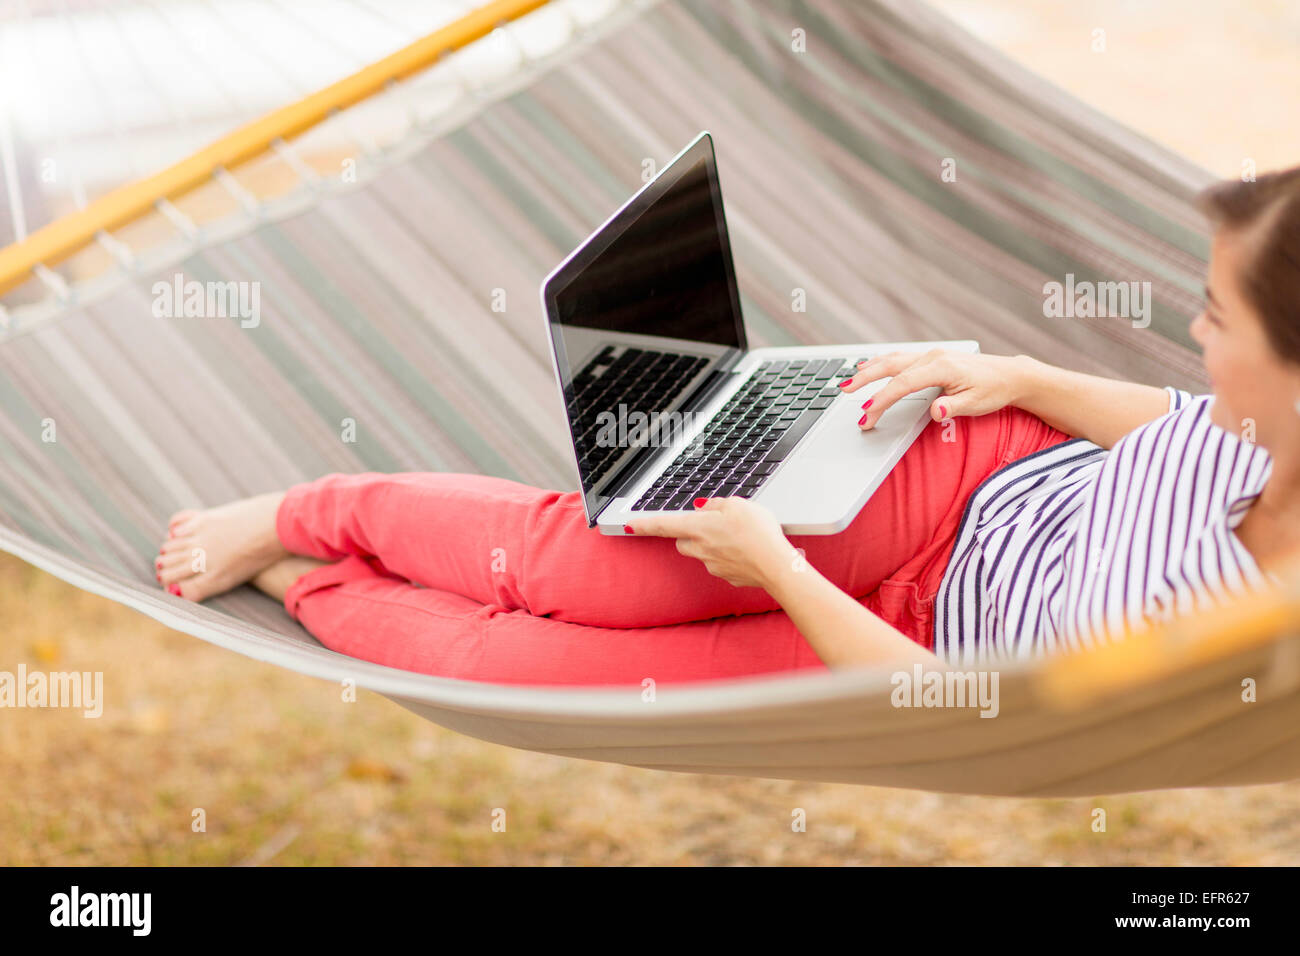 Women using laptop on hammock Stock Photo